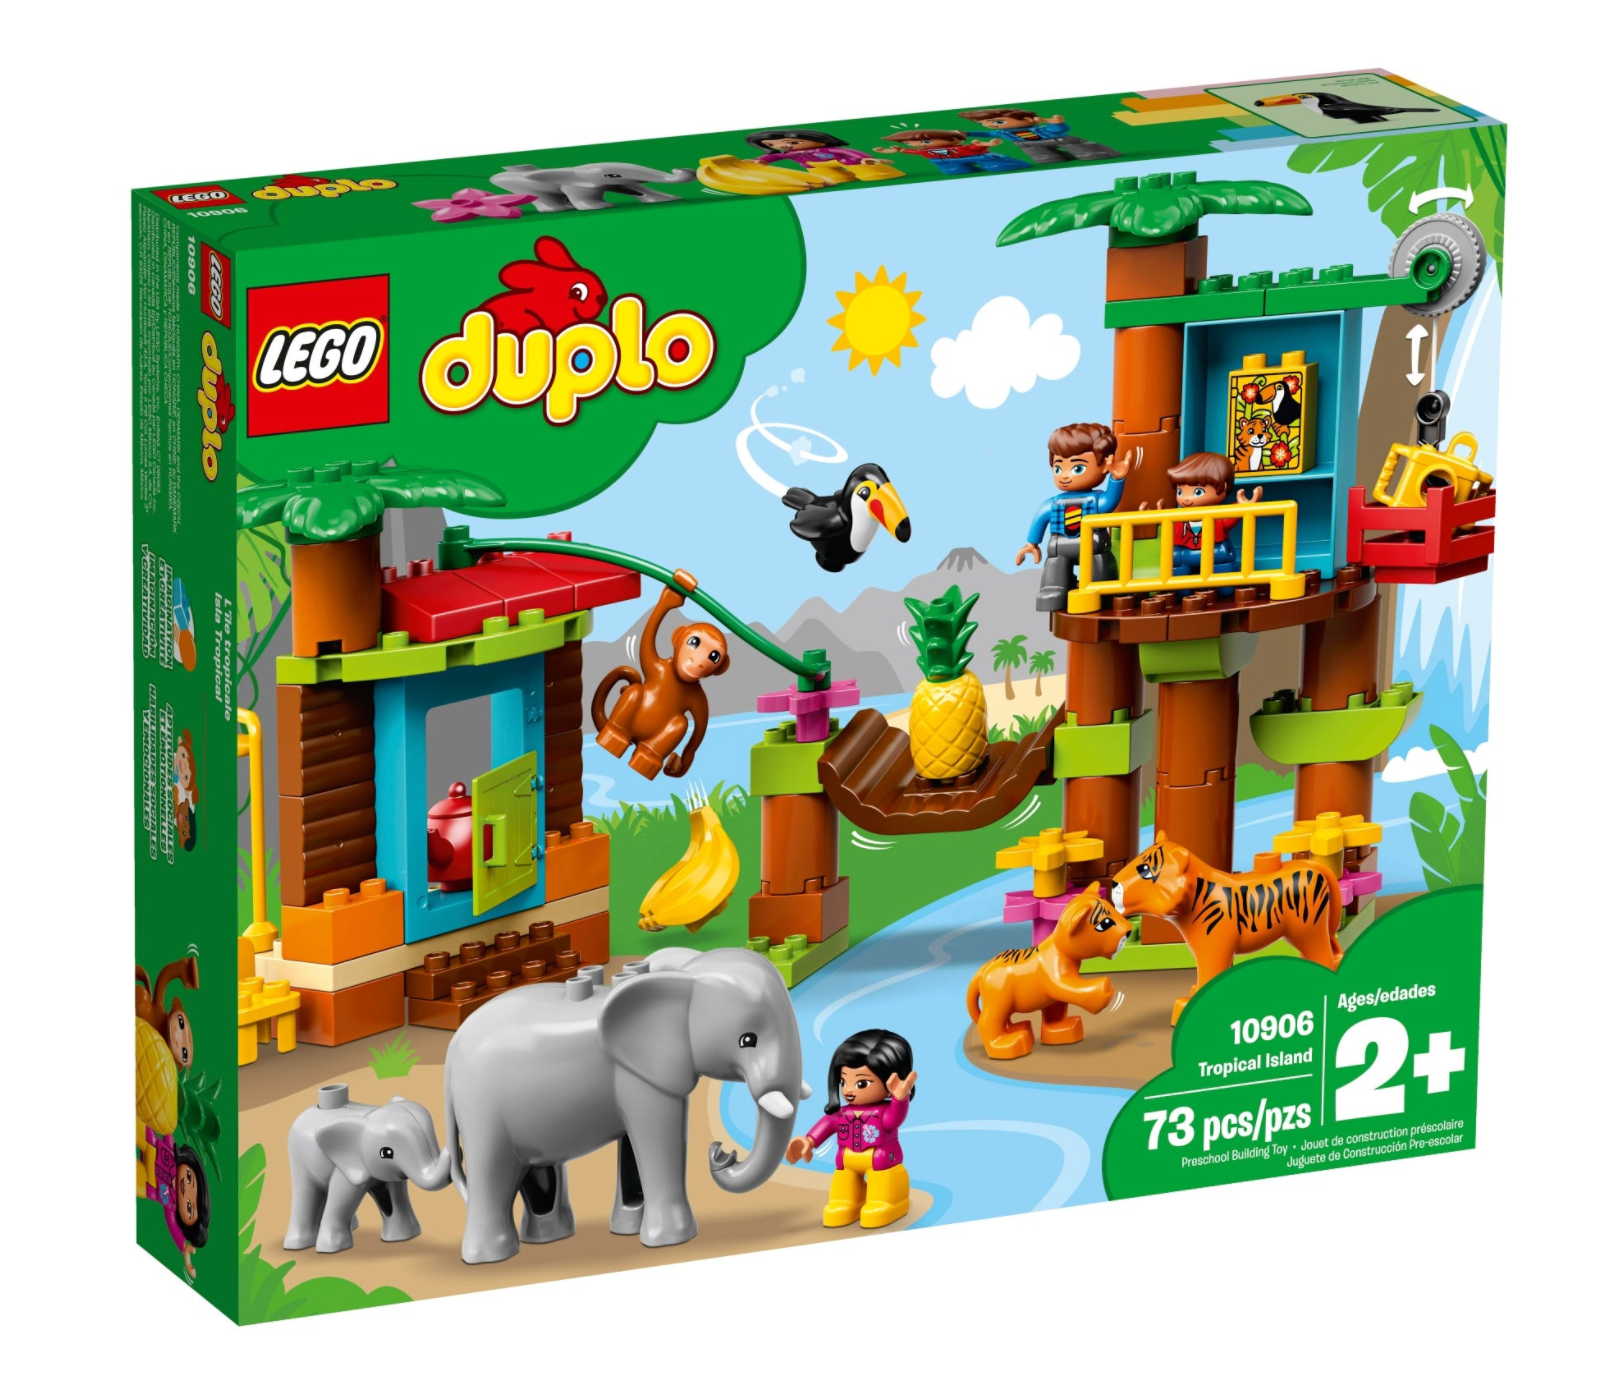 LEGO: DUPLO - Tropical Island